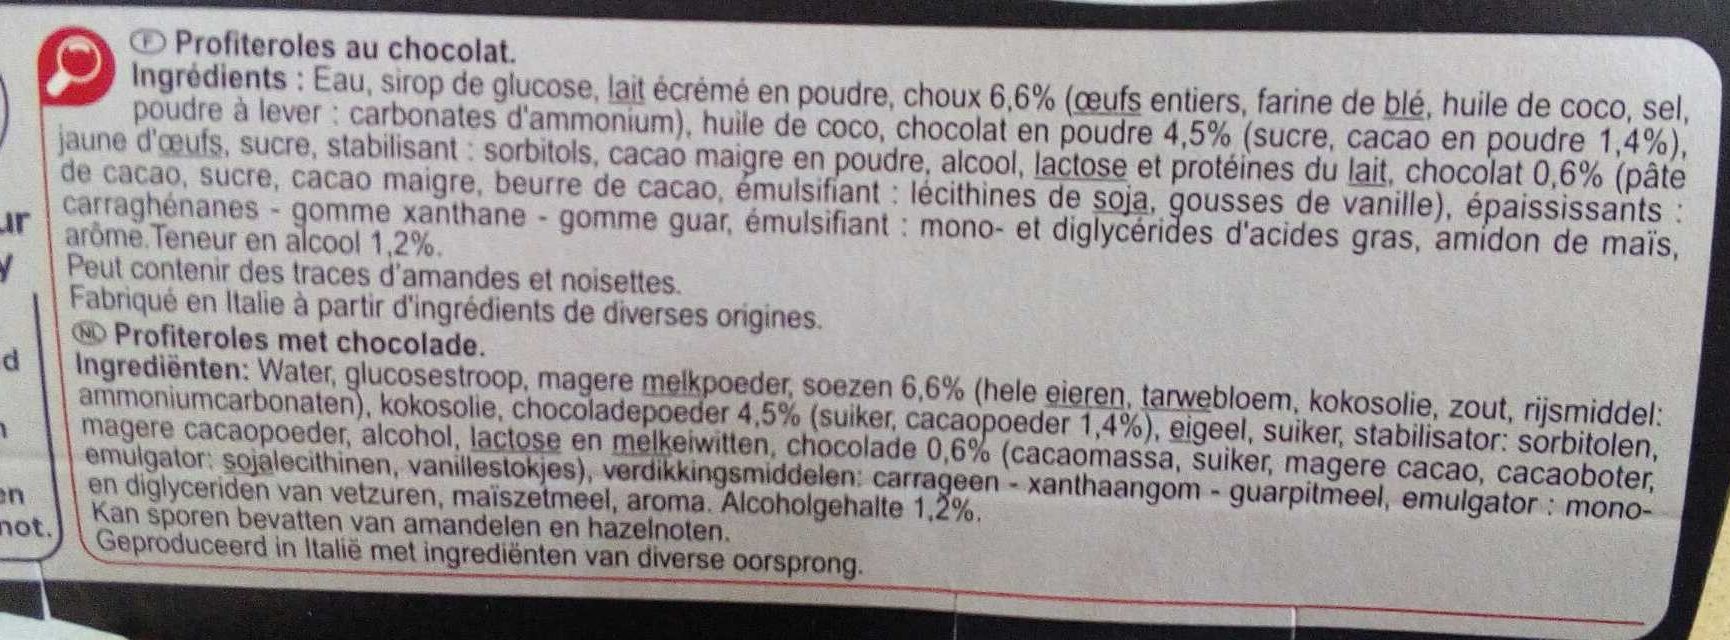 Profiteroles au chocolat - Składniki - fr